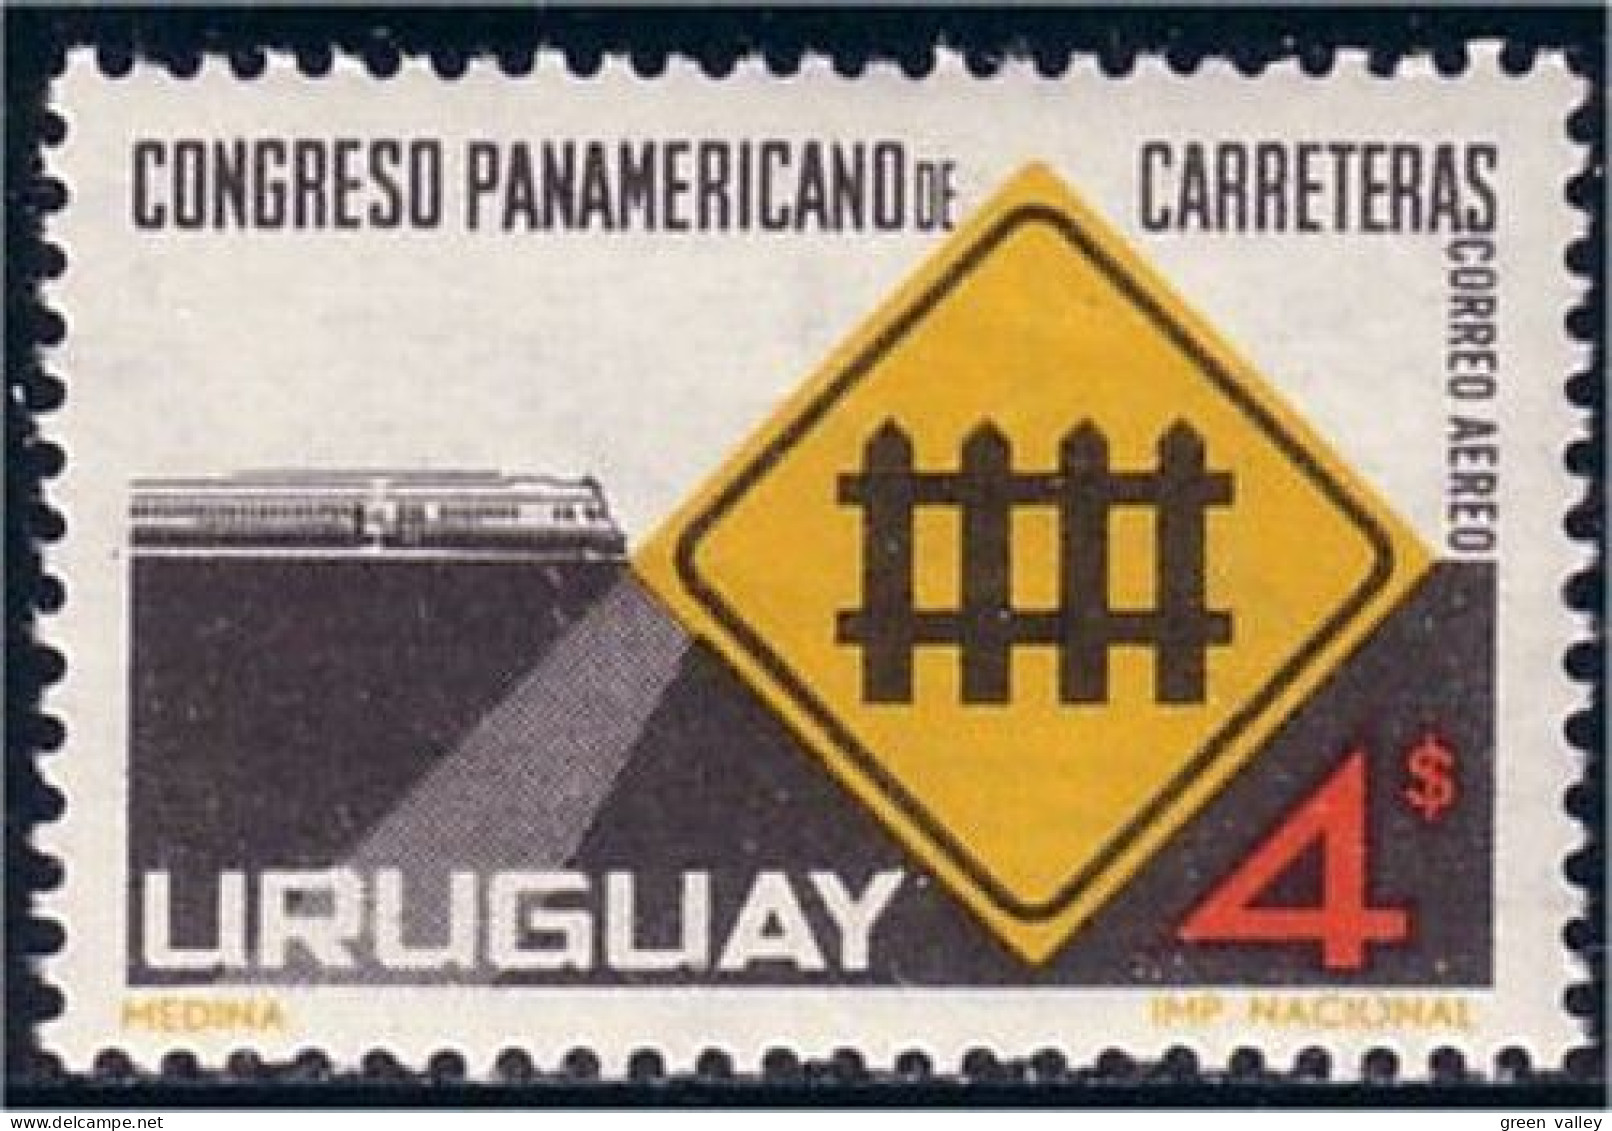 906 Uruguay Railroad Crossing Traverse Chemin De Fer MNH ** Neuf SC (URU-53) - Motorräder